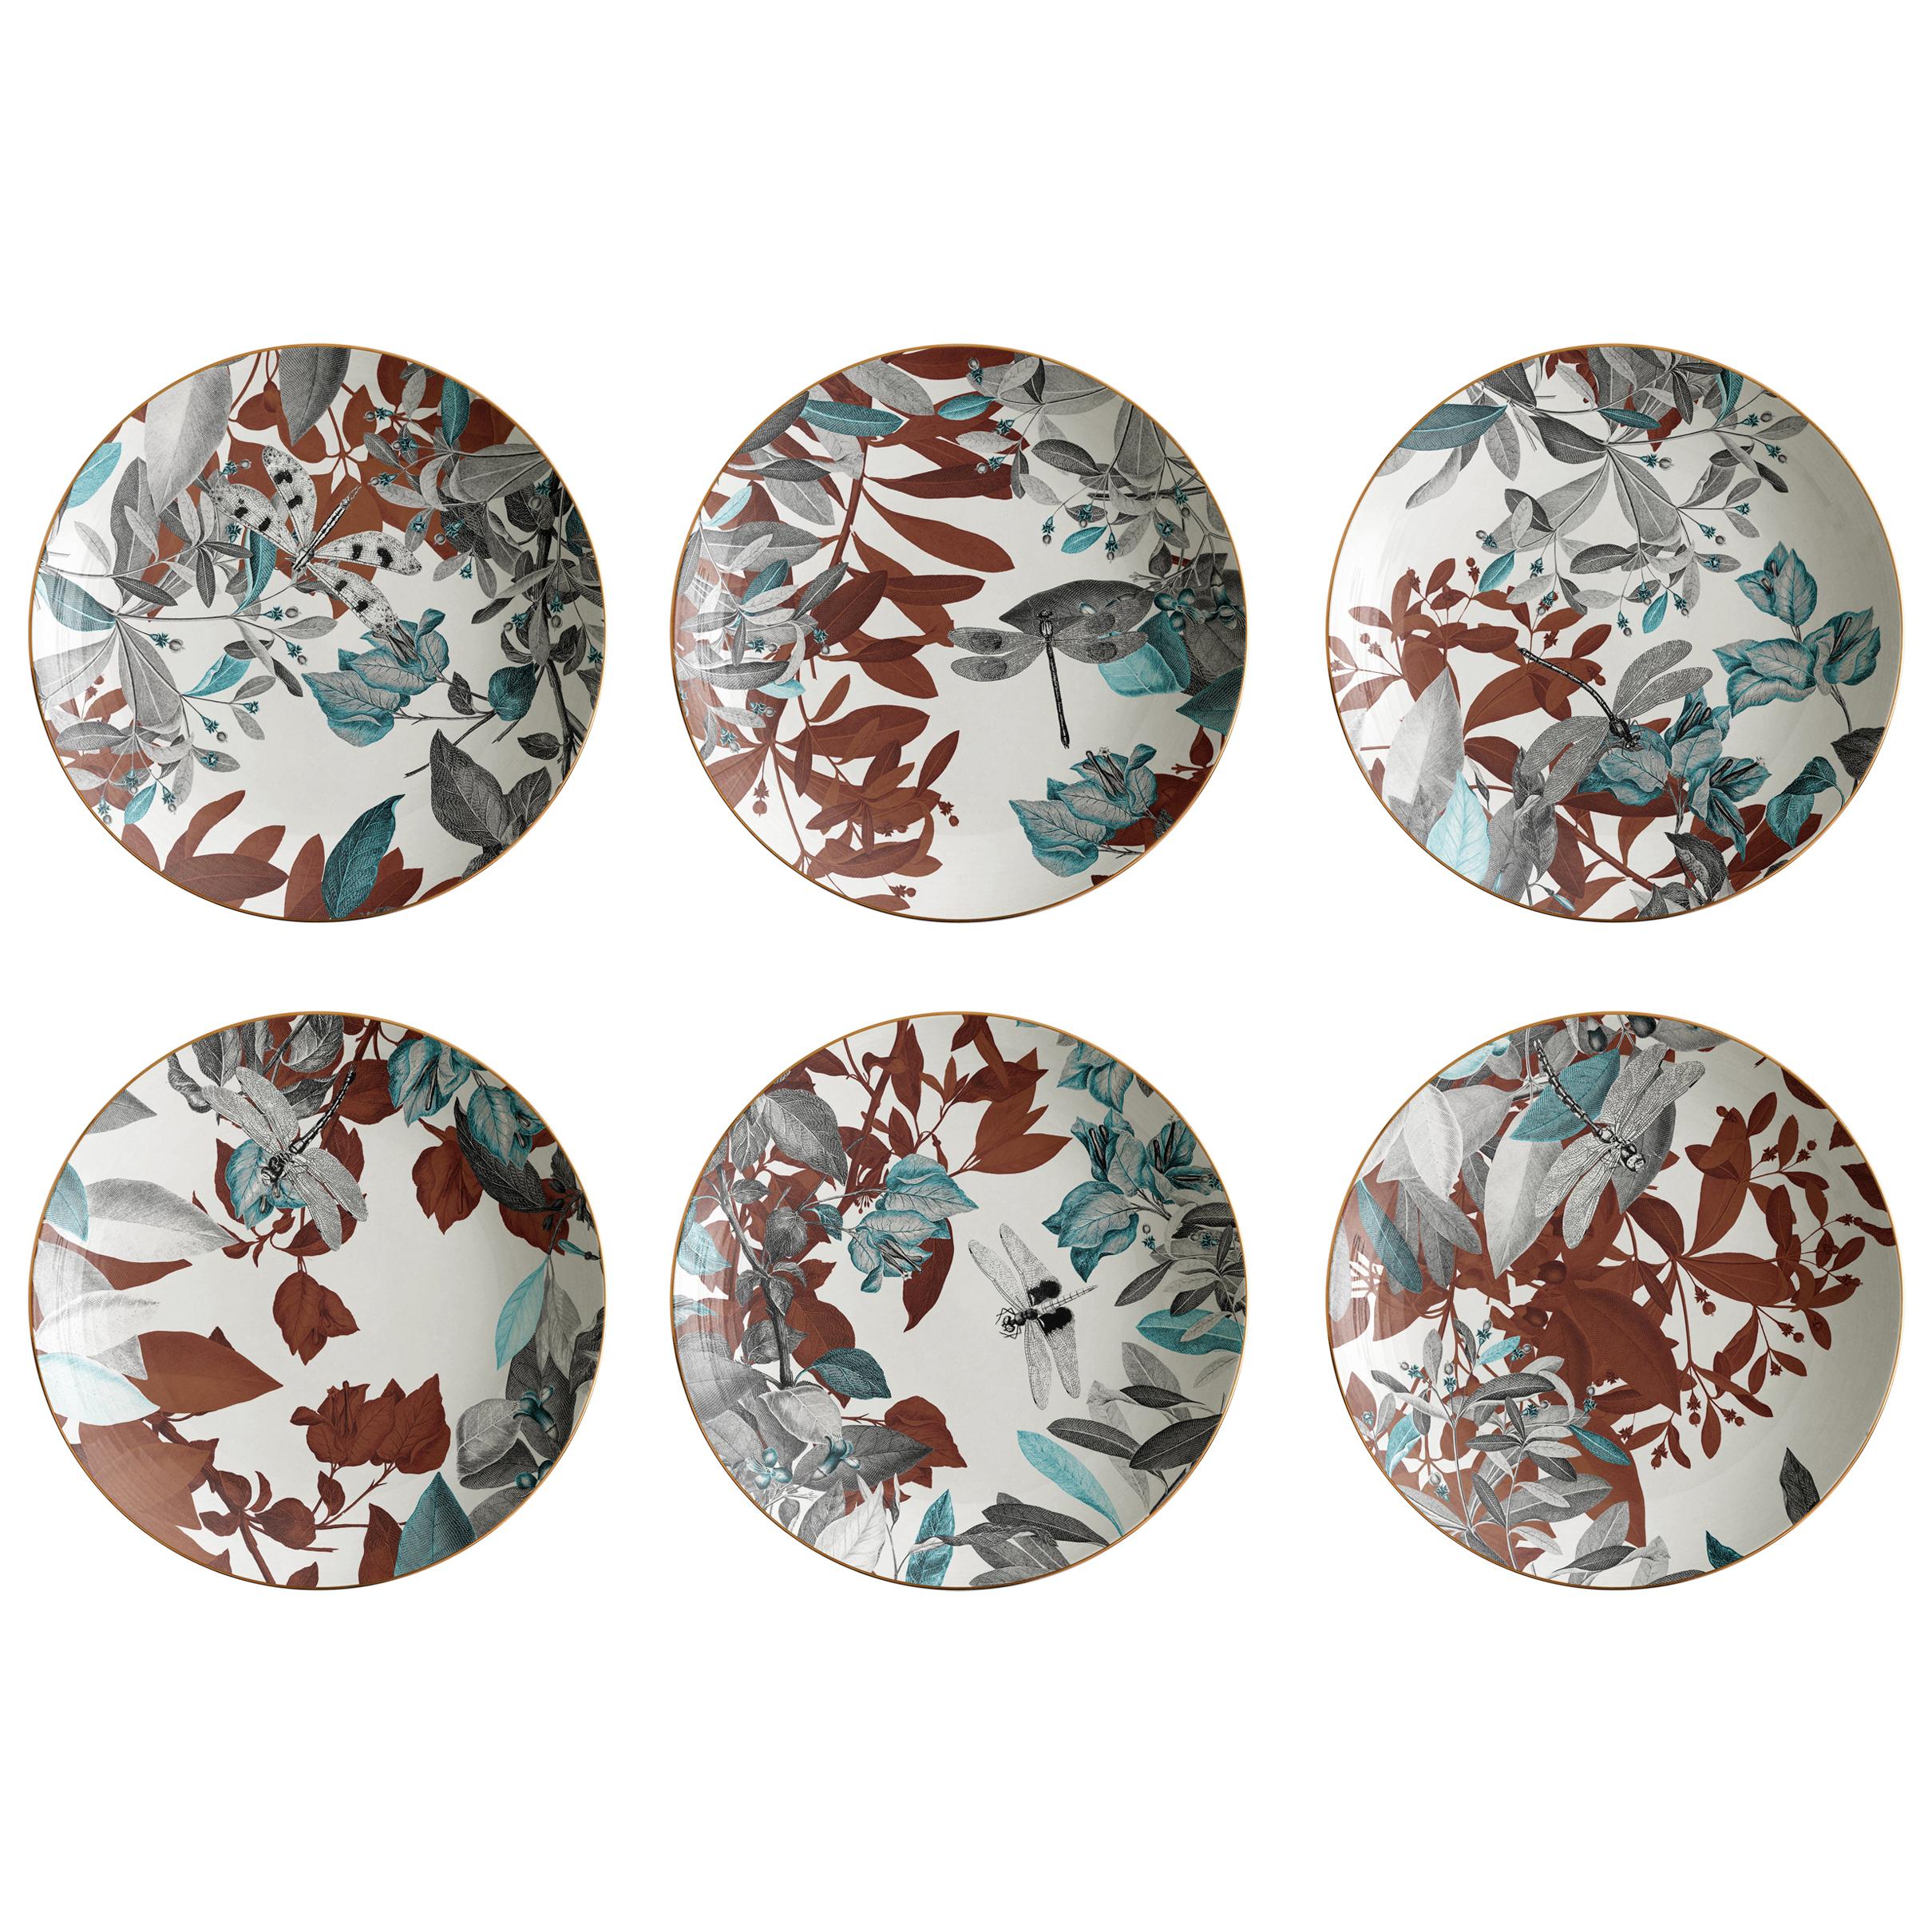 Black Dragon, Six Contemporary Porcelain soup plates with Decorative Design For Sale